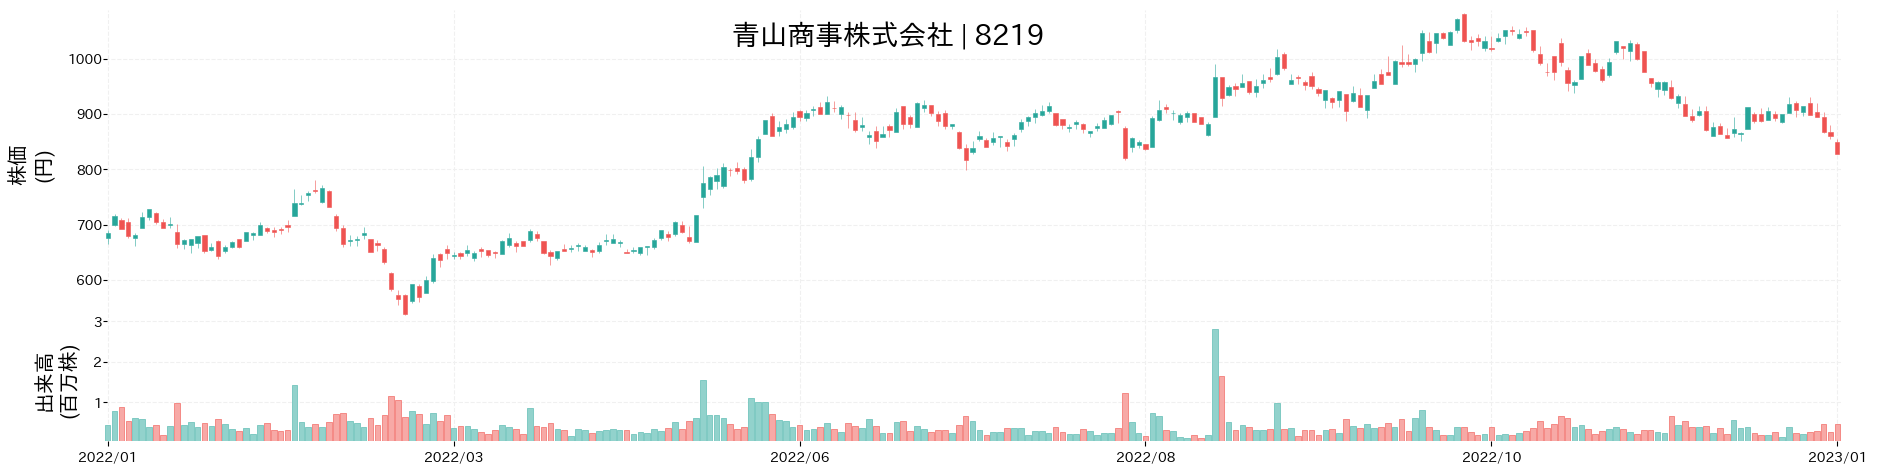 青山商事の株価推移(2022)